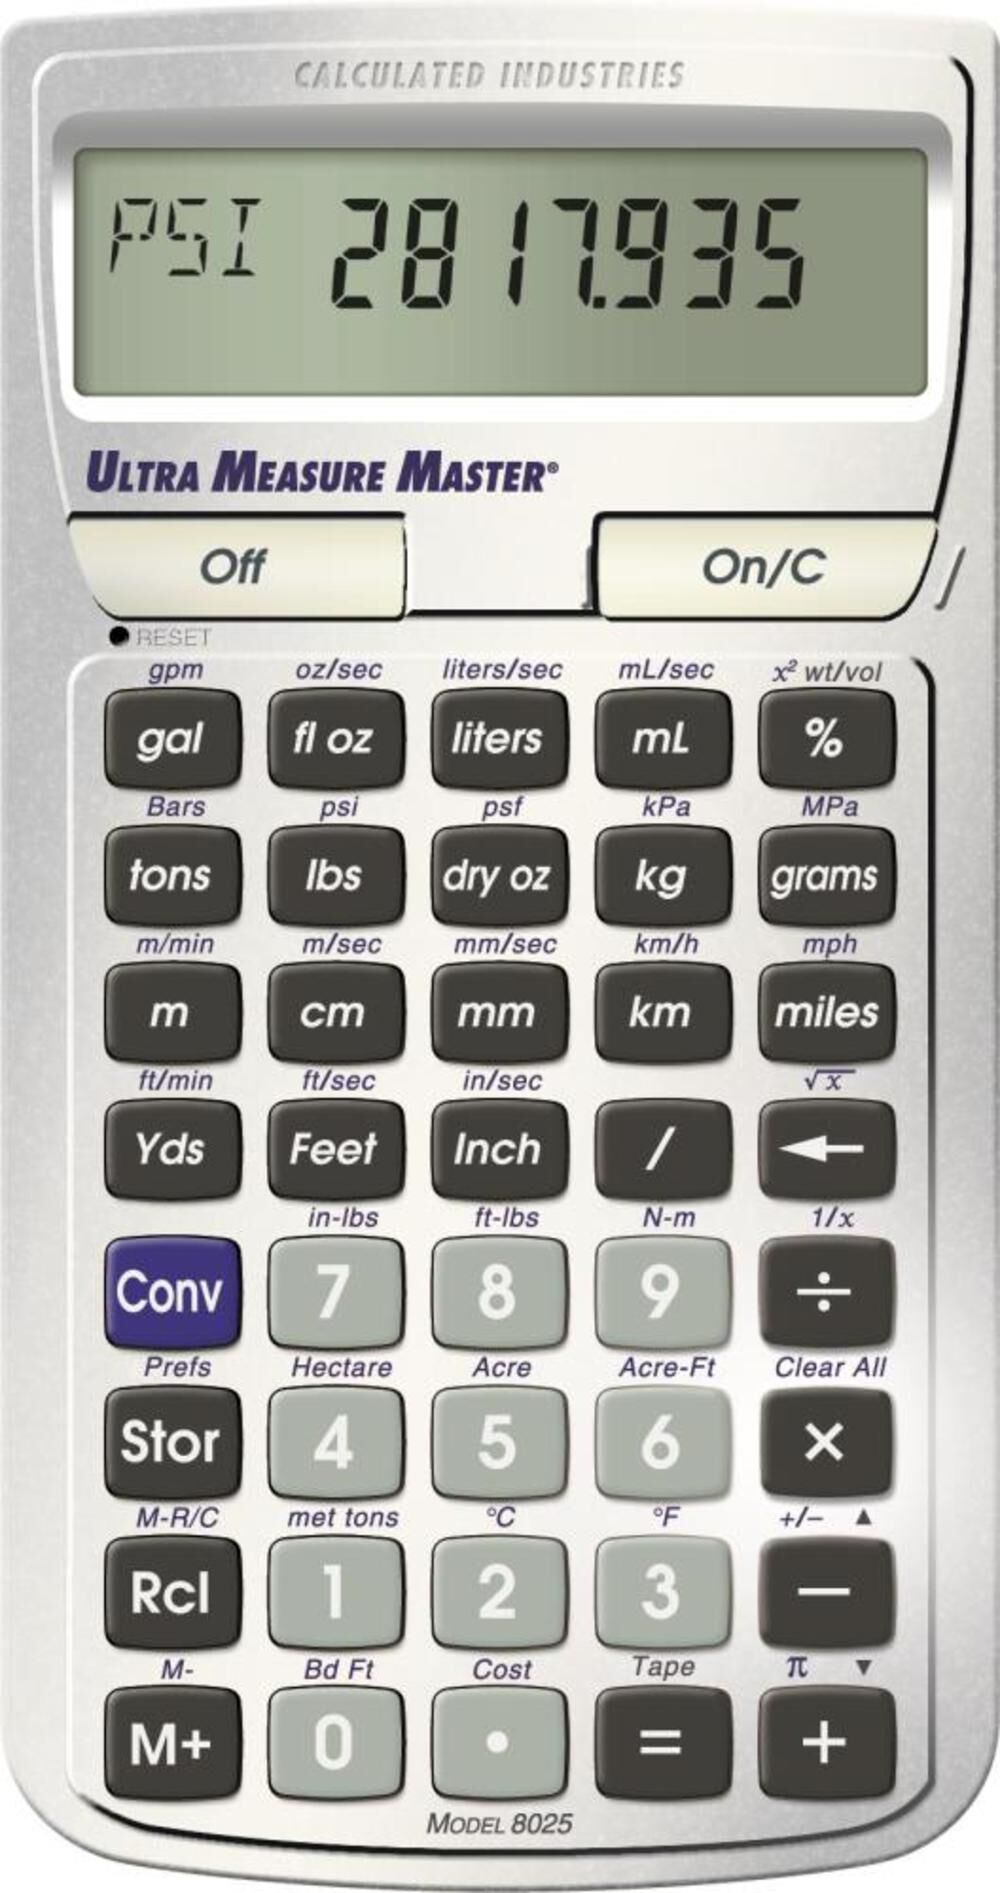 U.S. Standard to Metric Conversion Calculator 8025